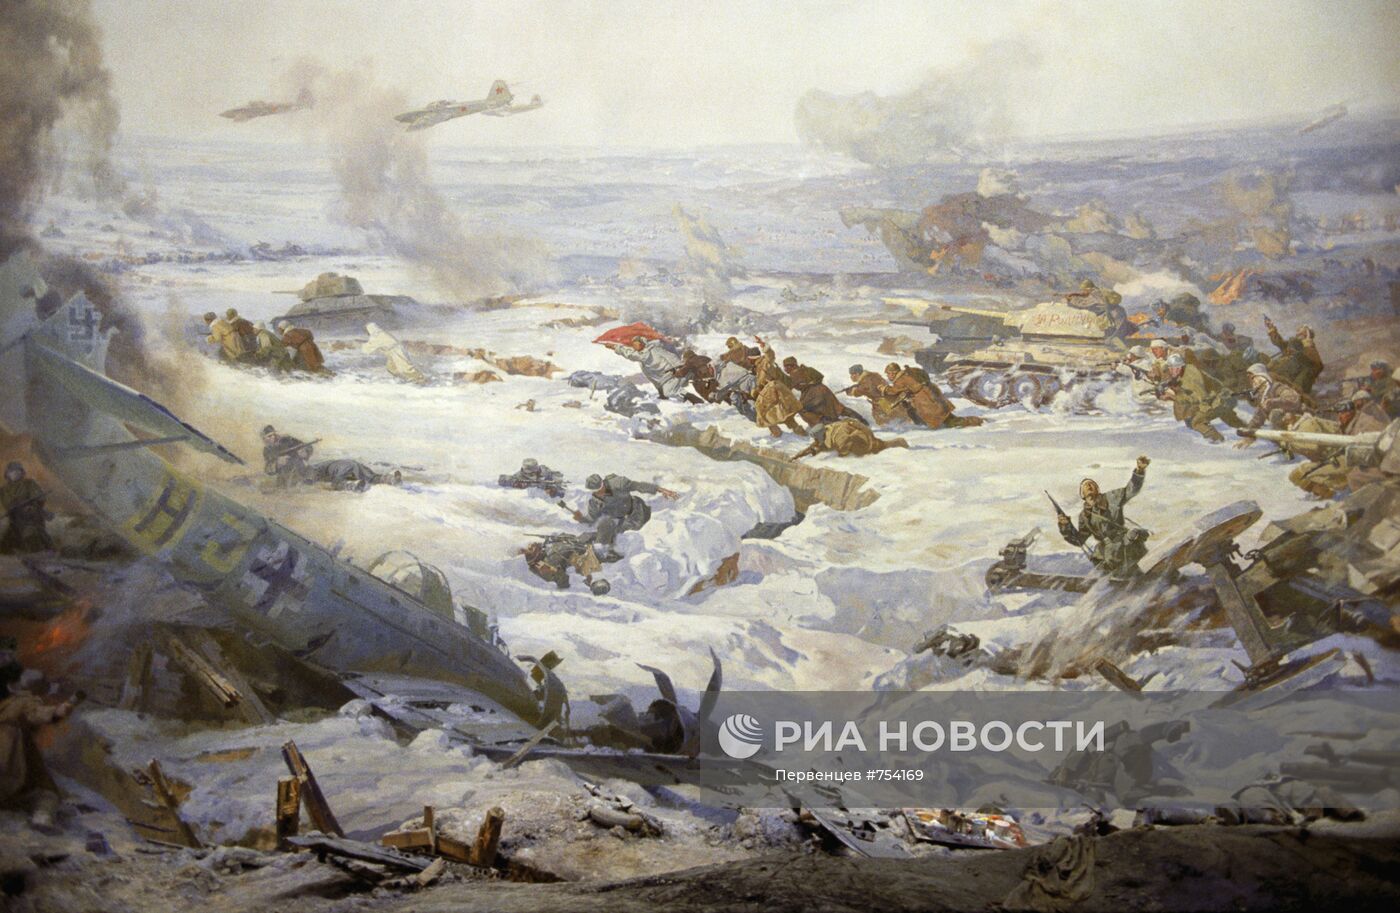 Фрагмент понорамы "Сталинградская битва"